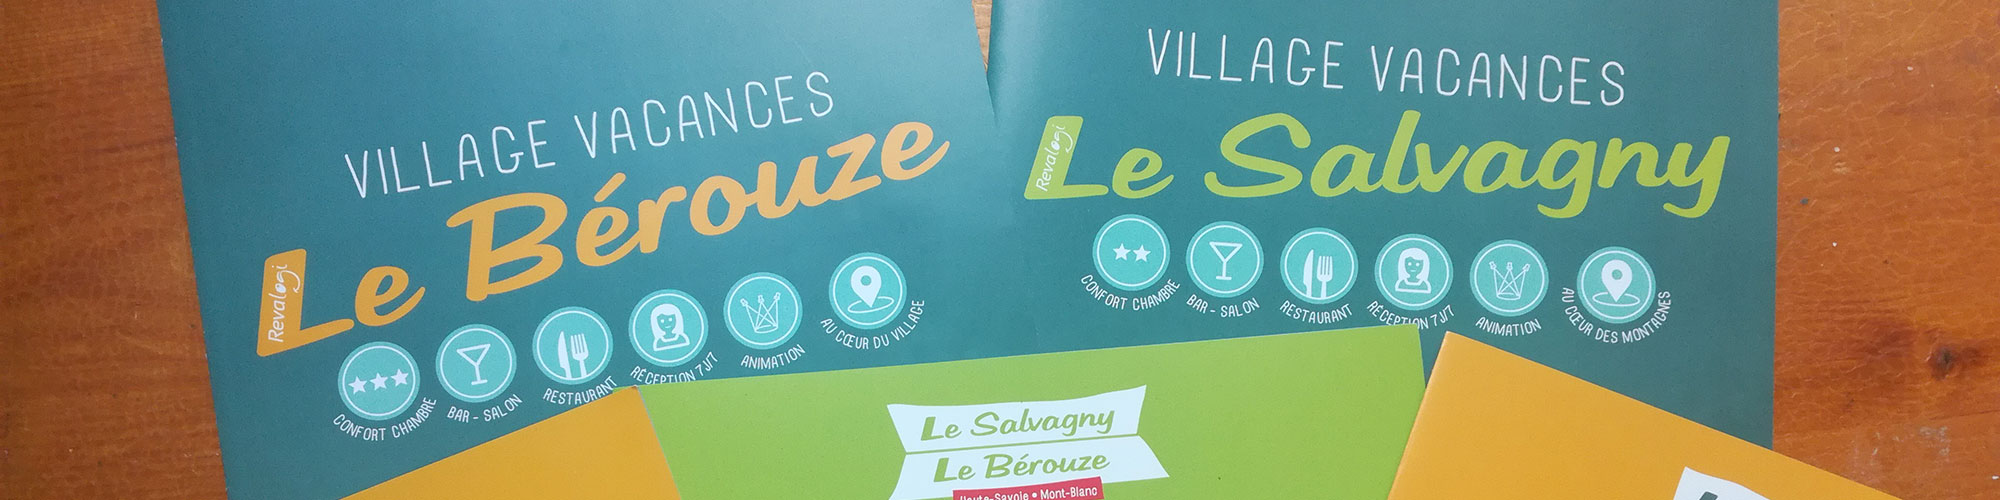 Village vacances Le Bérouze / Le Salvagny